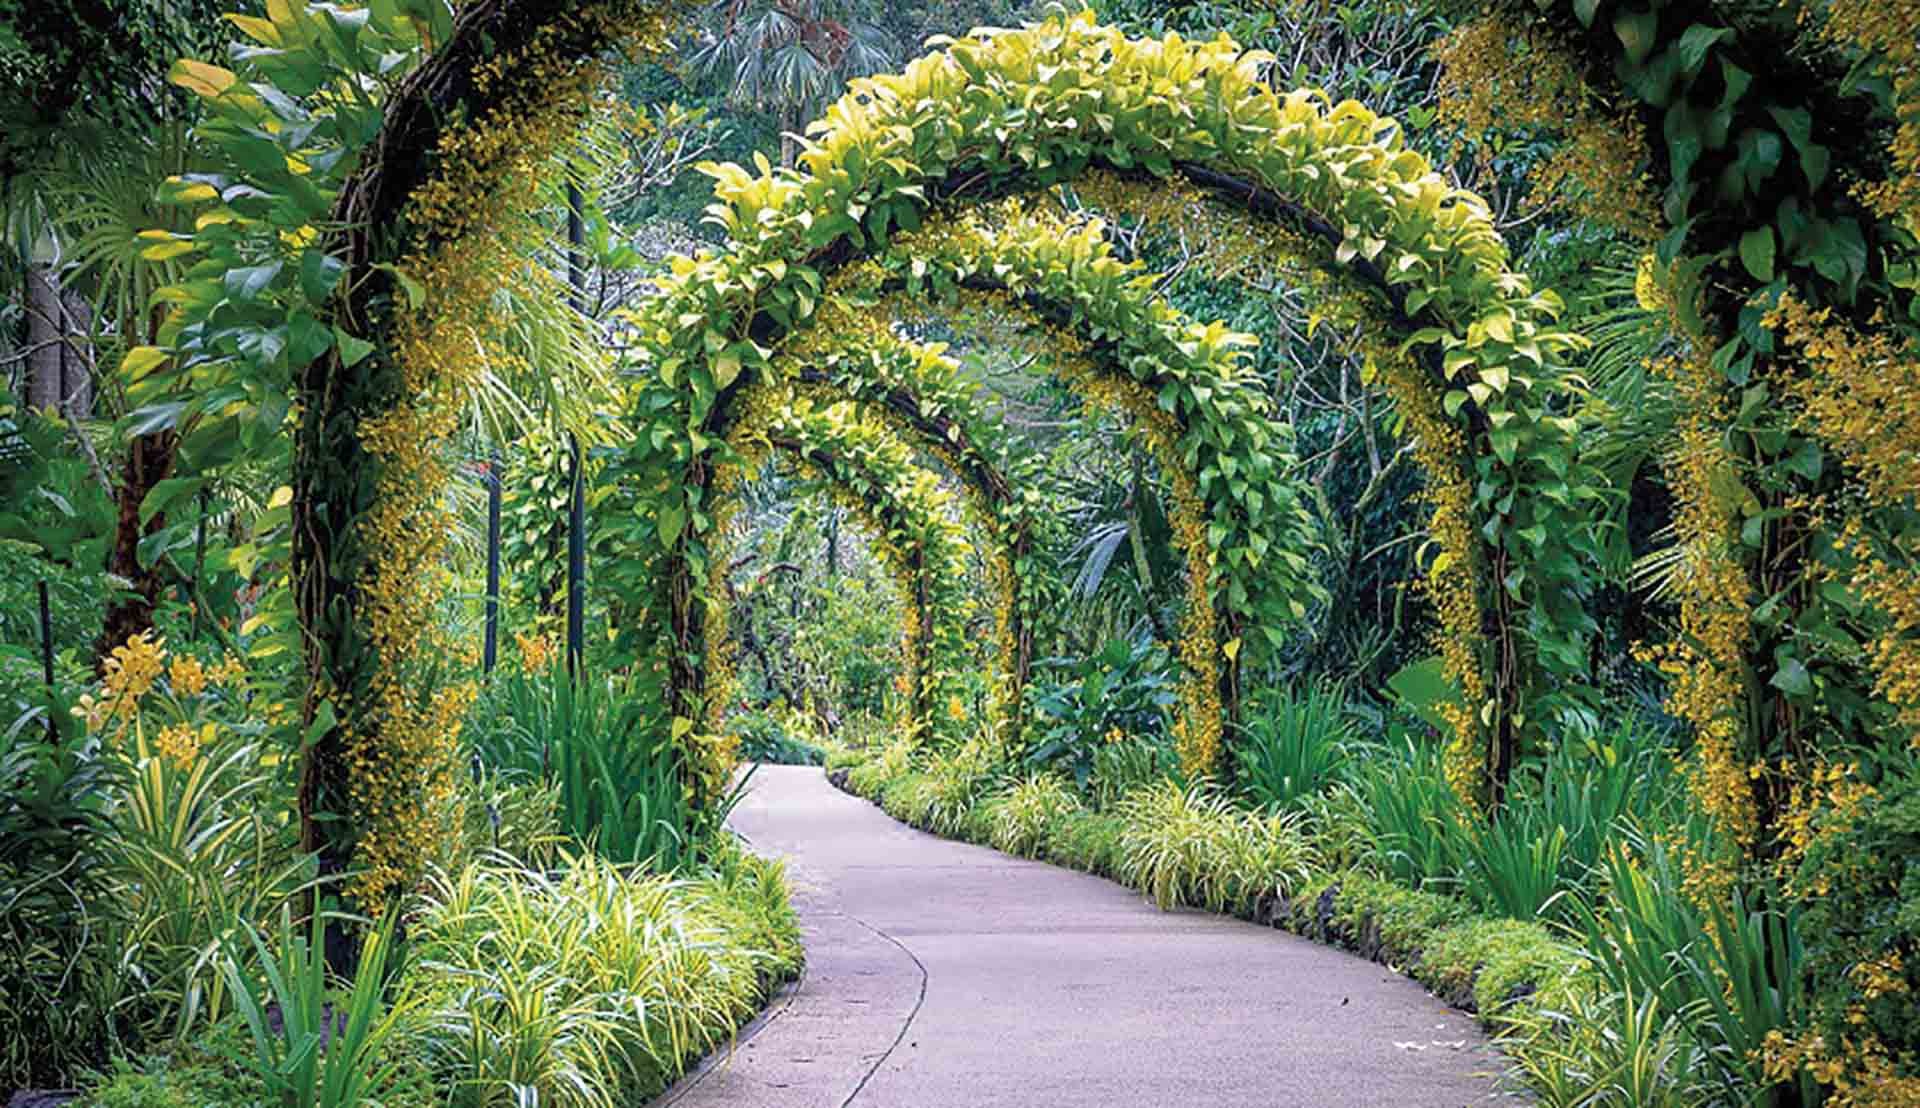 MacRitchie Reservoir là điểm đến nổi tiếng với người yêu thiên nhiên tại Singapore.